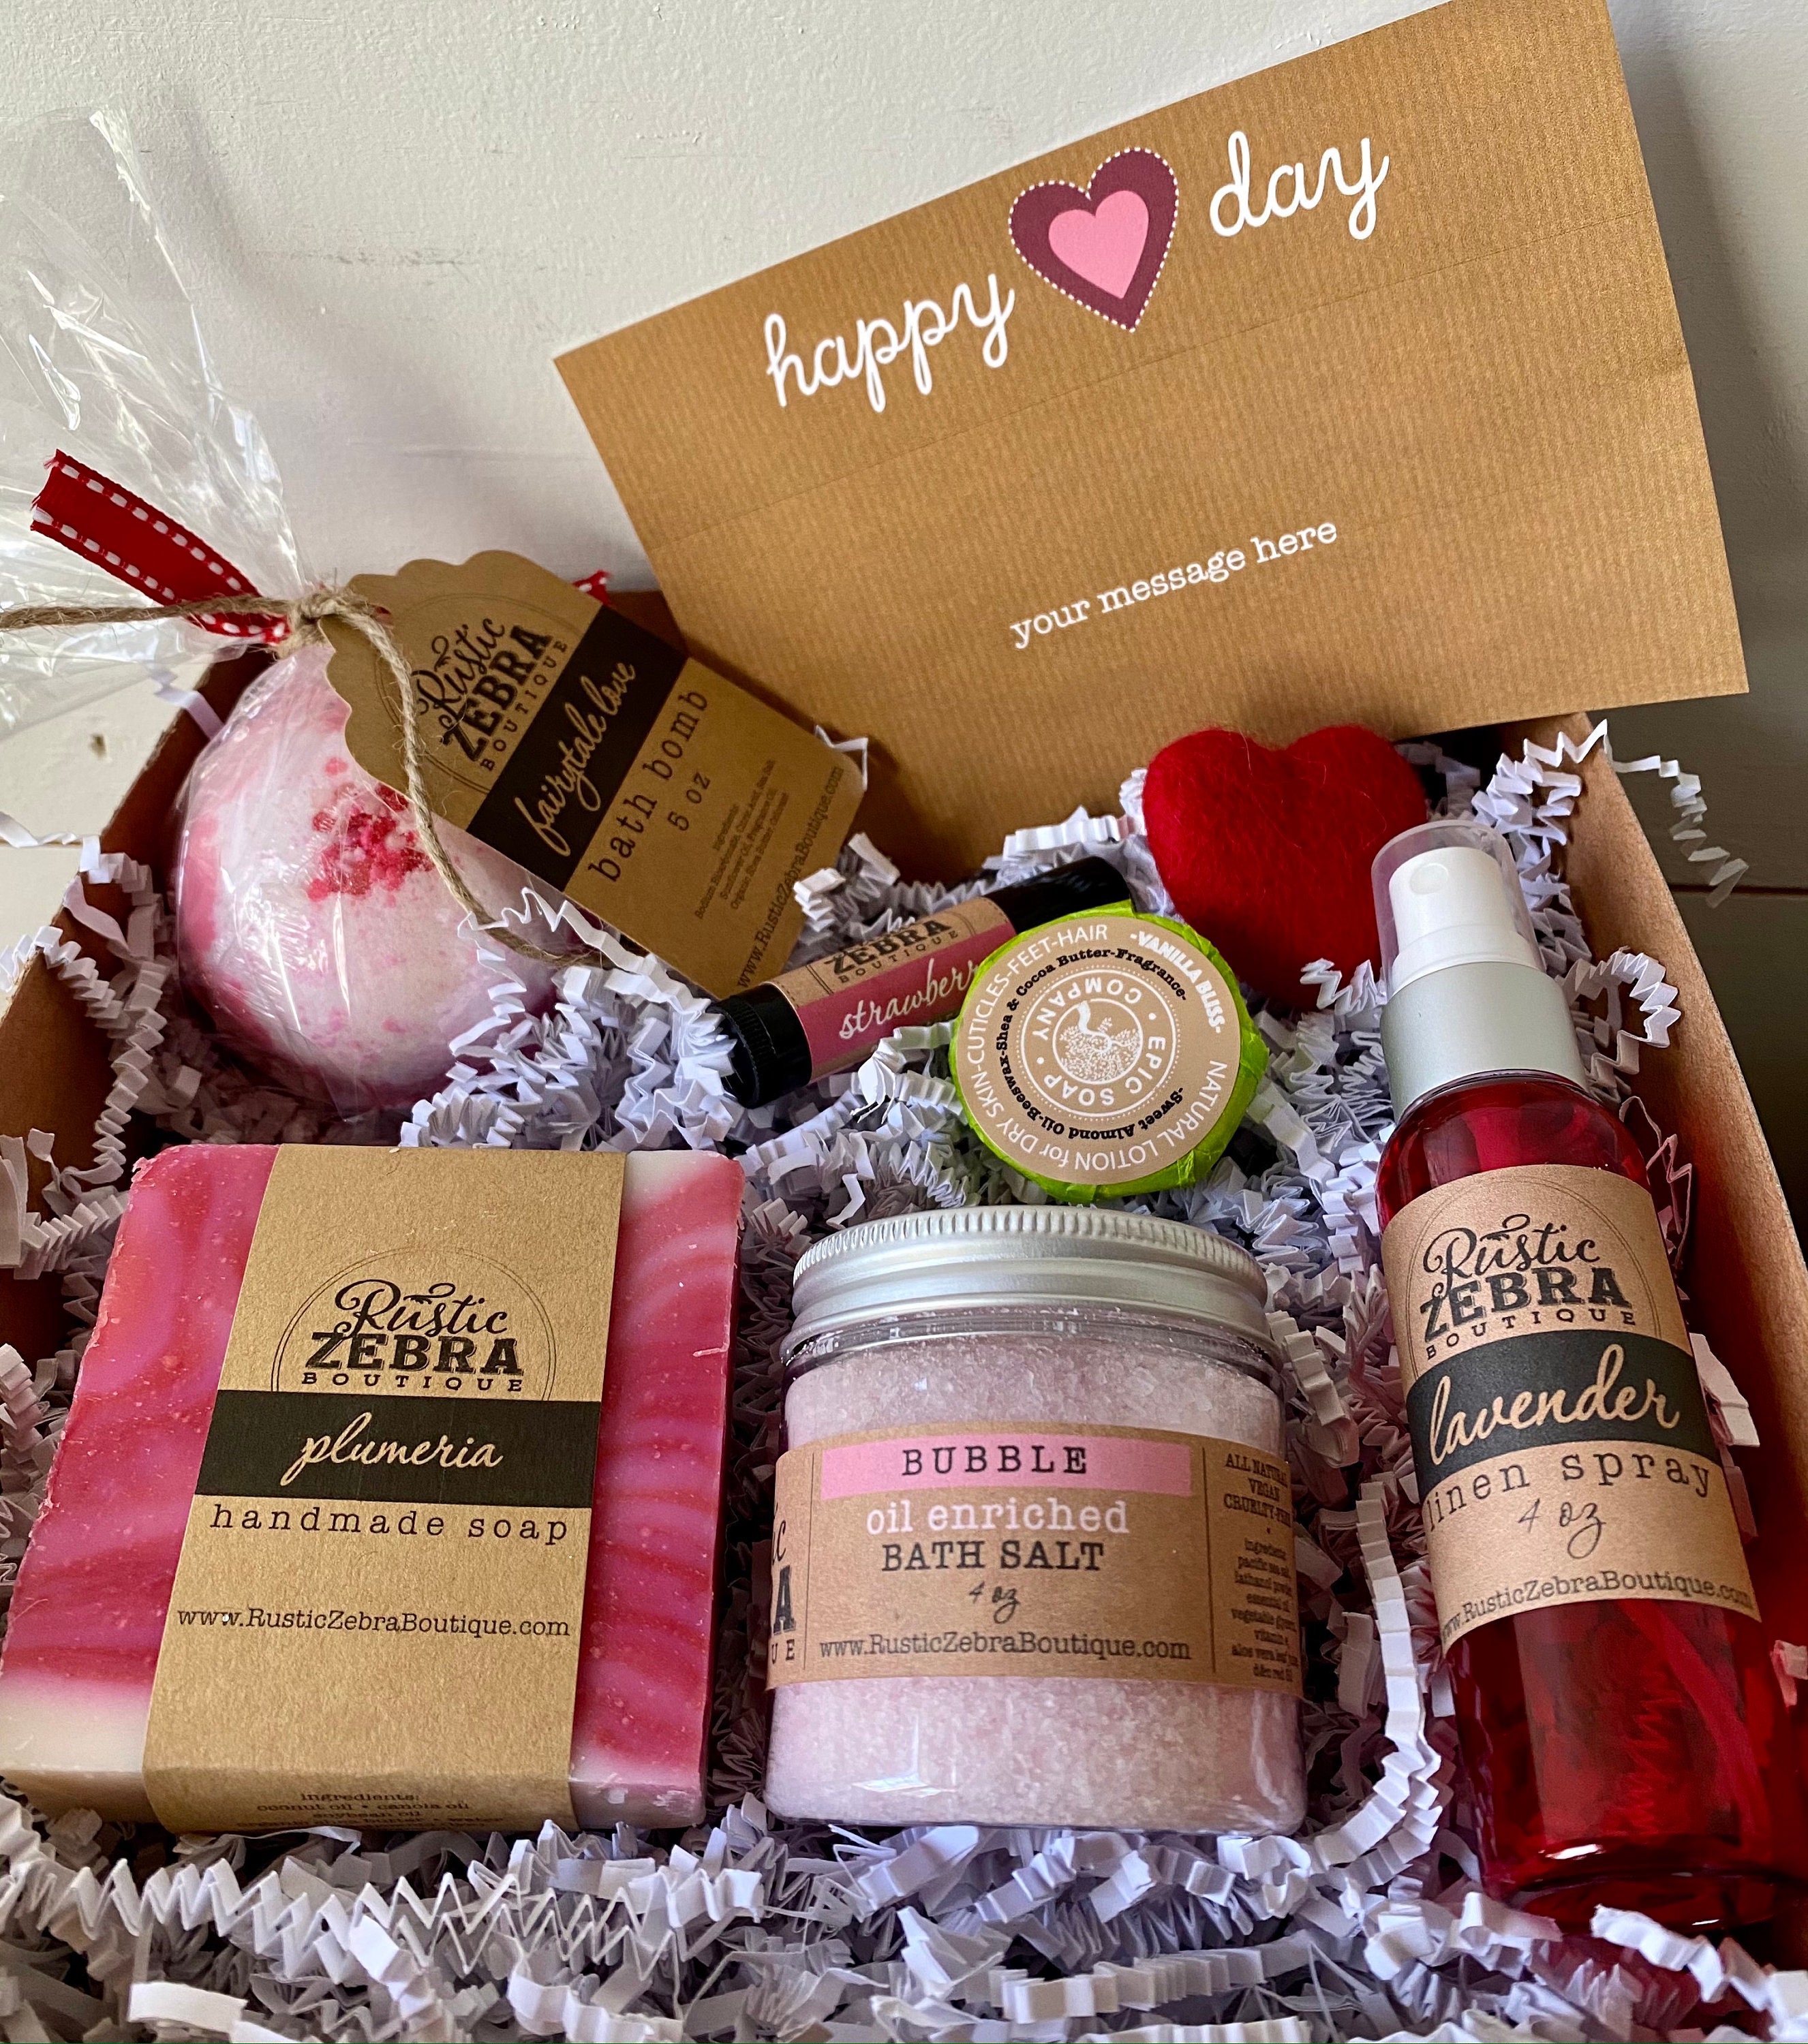 Caja de regalo personalizada / Caja de regalo del Día de San Valentín /  Caja de regalo feliz del Día de San Valentín / Regalos para ella / Regalos  para adolescentes -  España